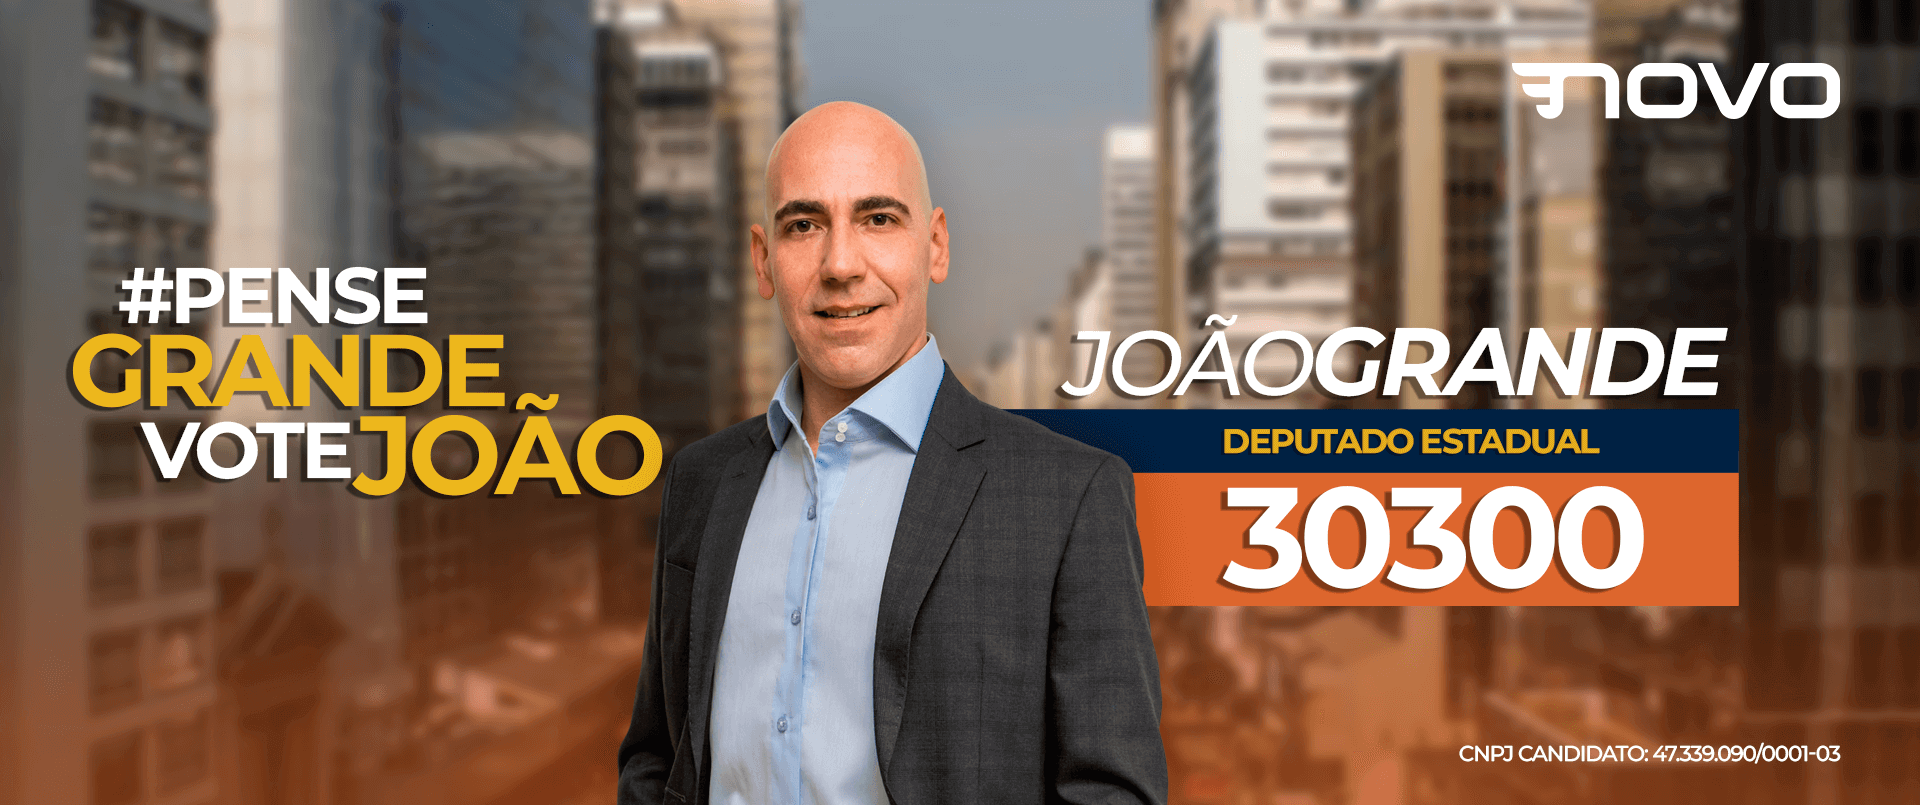 João Grande 30300